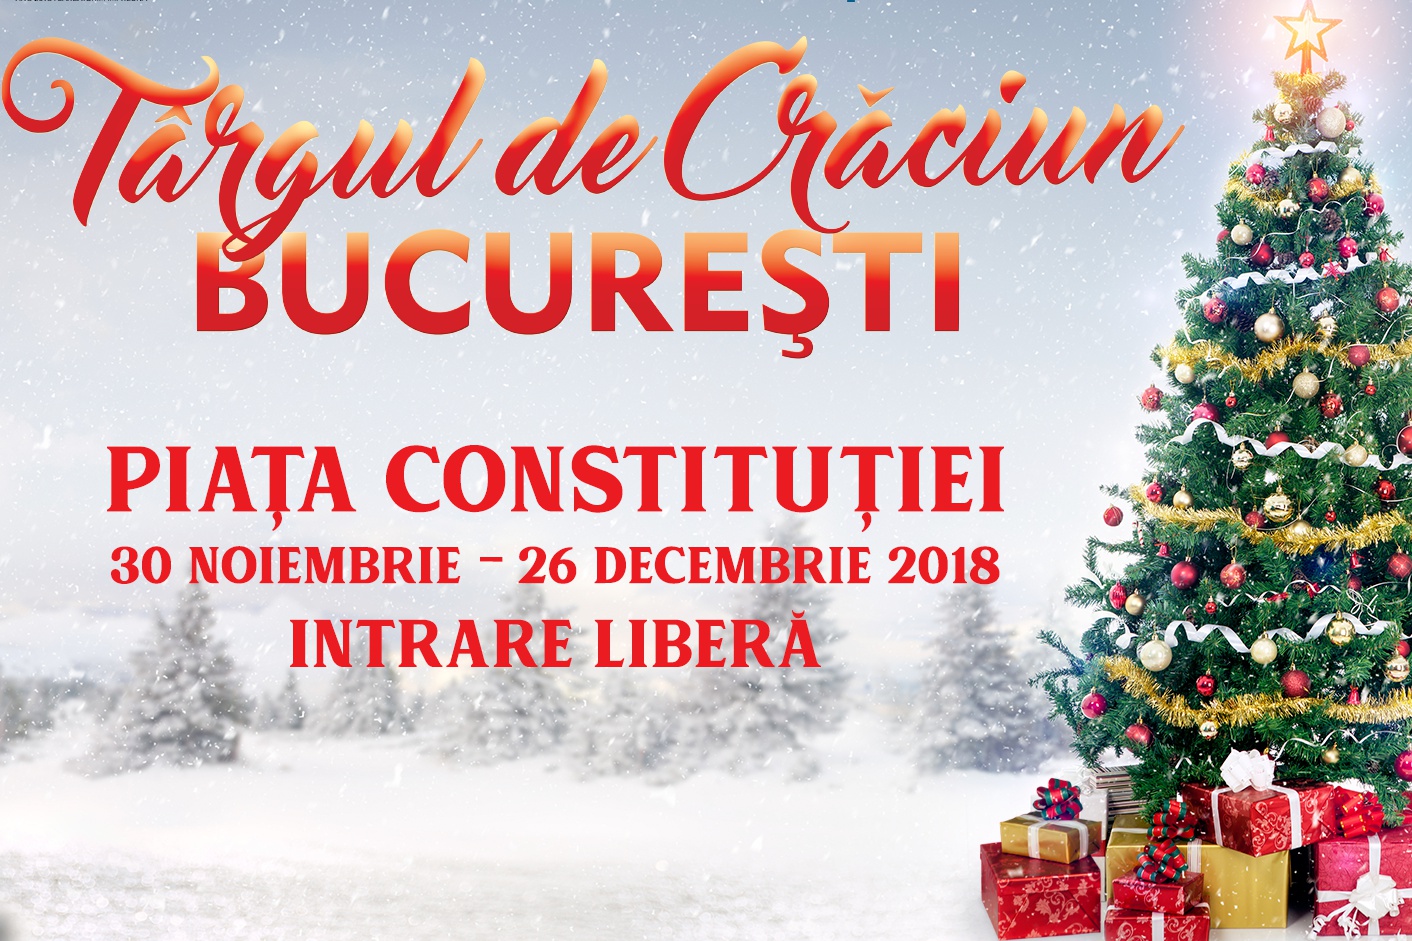 Târgul de Crăciun București 2018